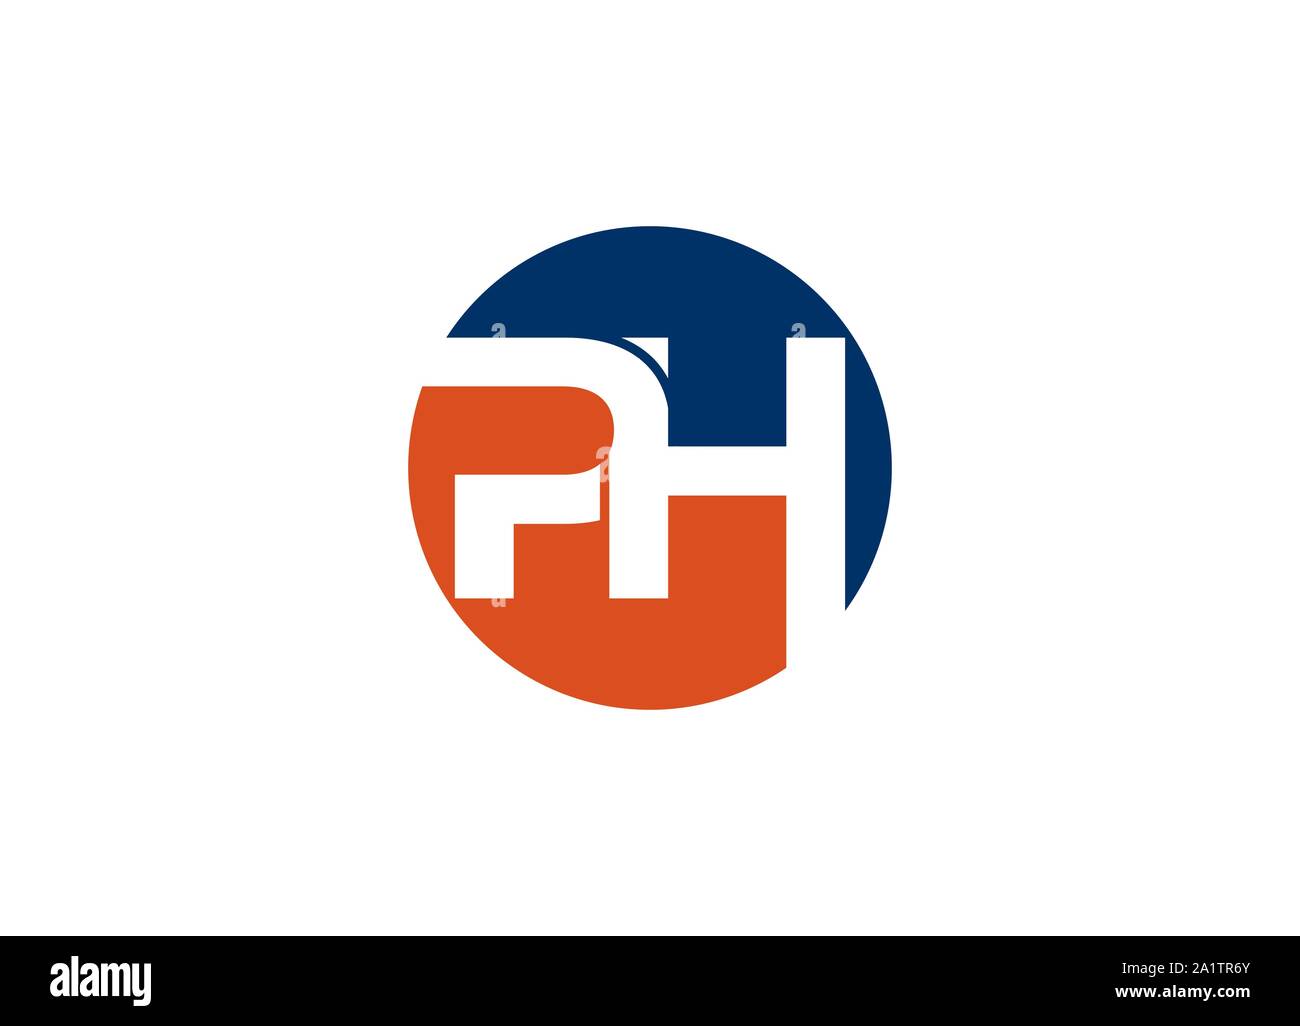 PH letter mark logo, PH logo Stock Vector